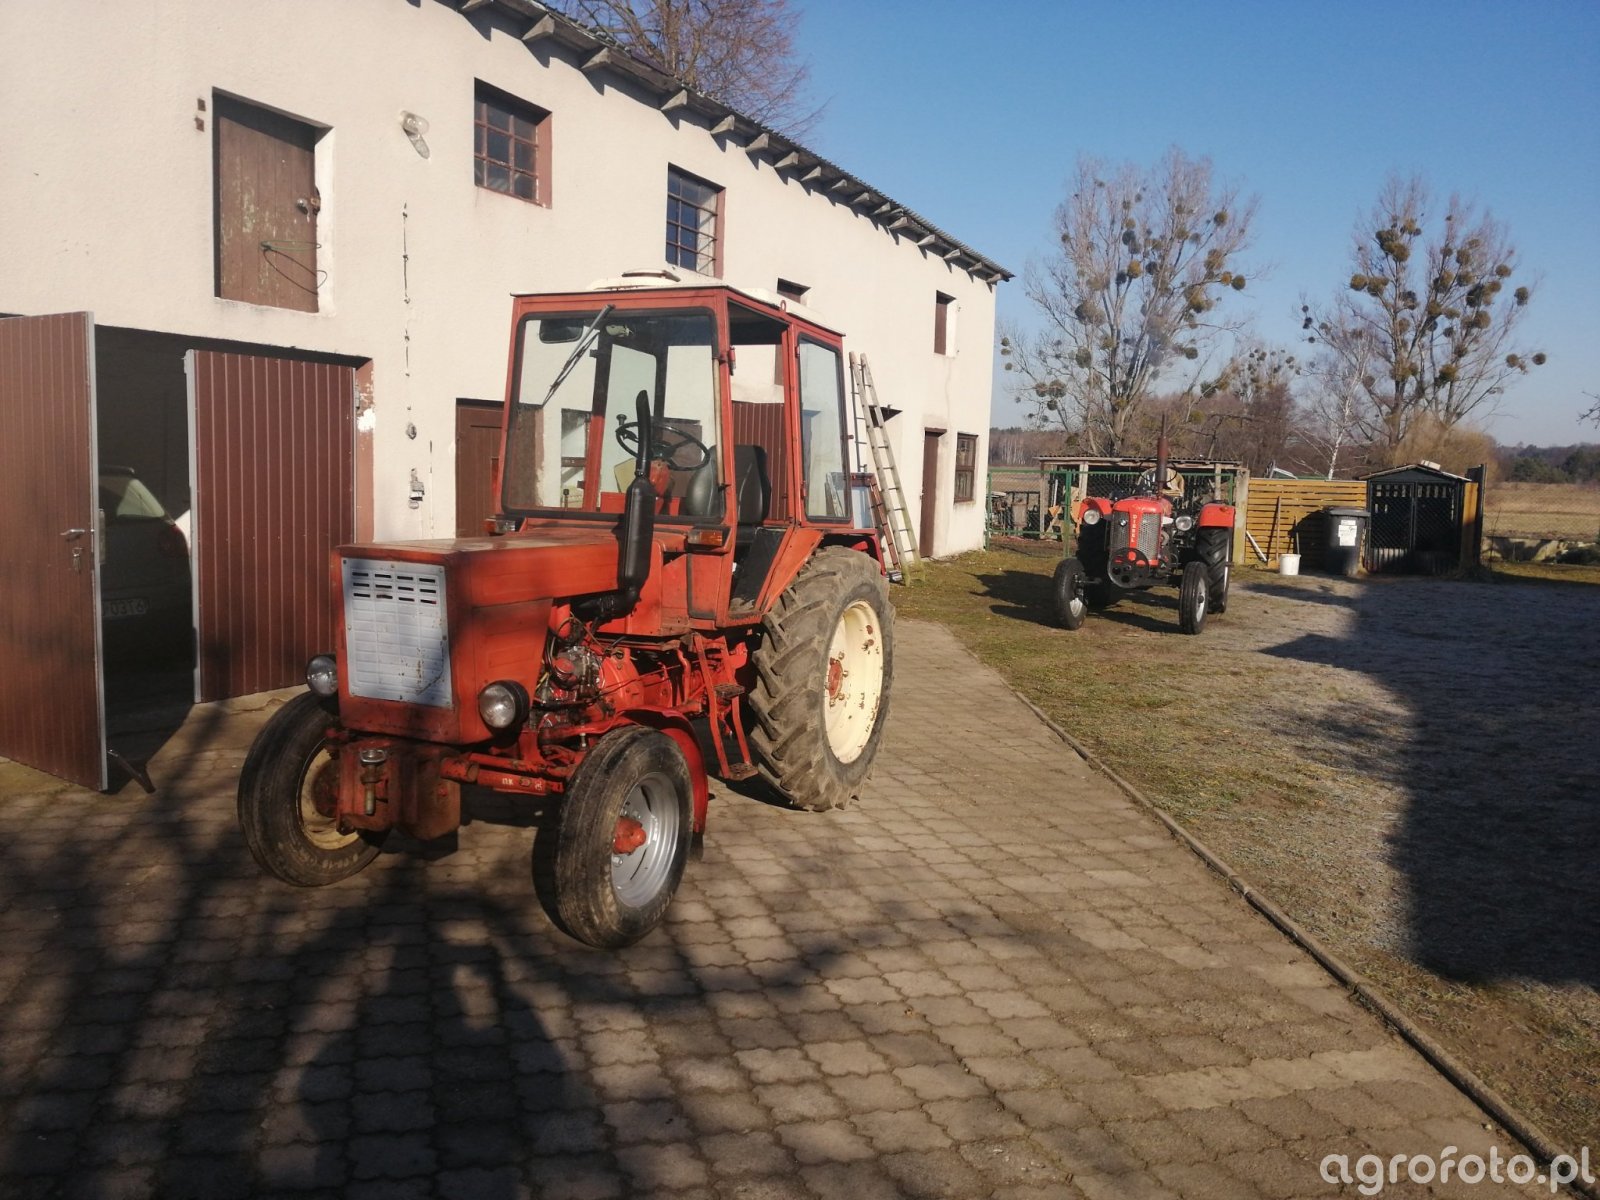 Instrukcja Napraw I Obslugi Wladimirec T 25 Foto traktor Wladimirec t-25 & Zetor 25 id:796384 - Galeria rolnicza agrofoto